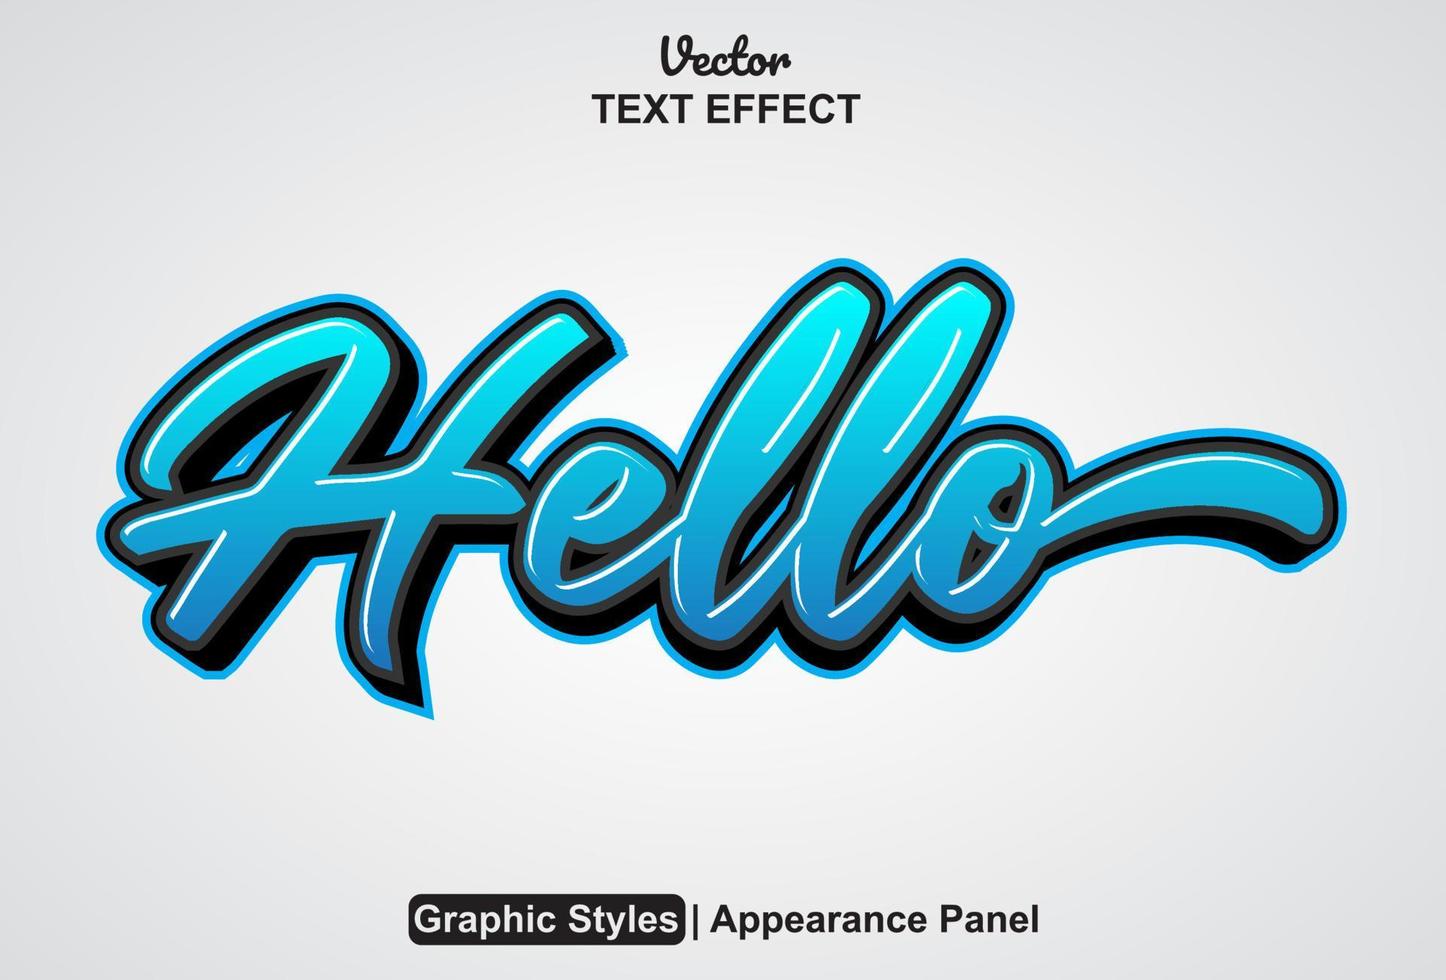 Hallo tekst effect met grafisch stijl en bewerkbaar. vector